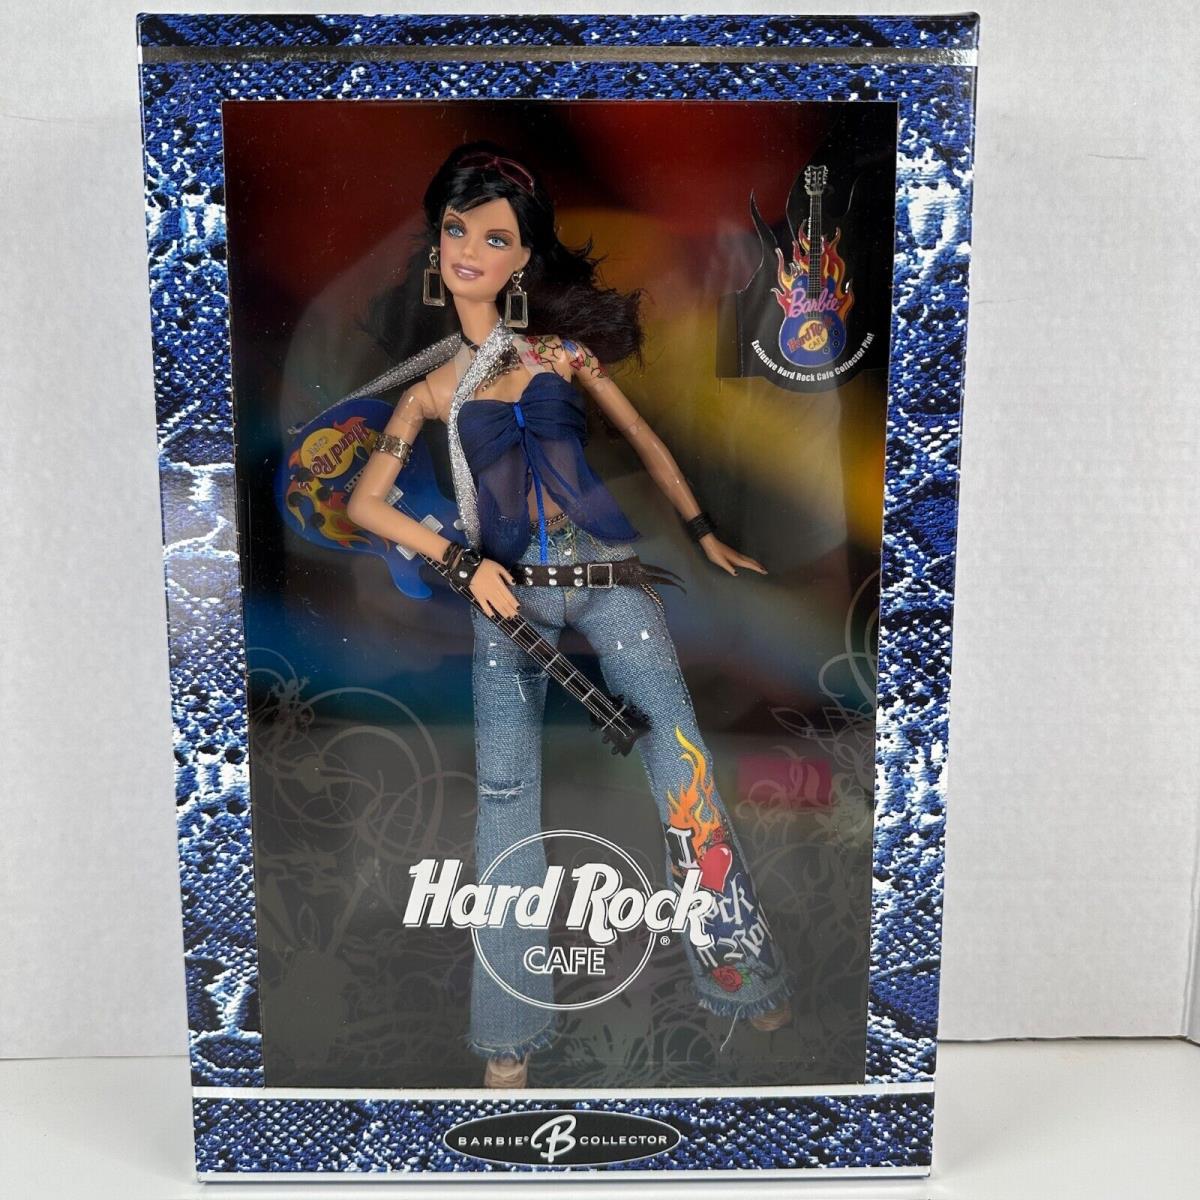 Hard Rock Cafe Barbie Collector Doll 2005 Mattel J0963